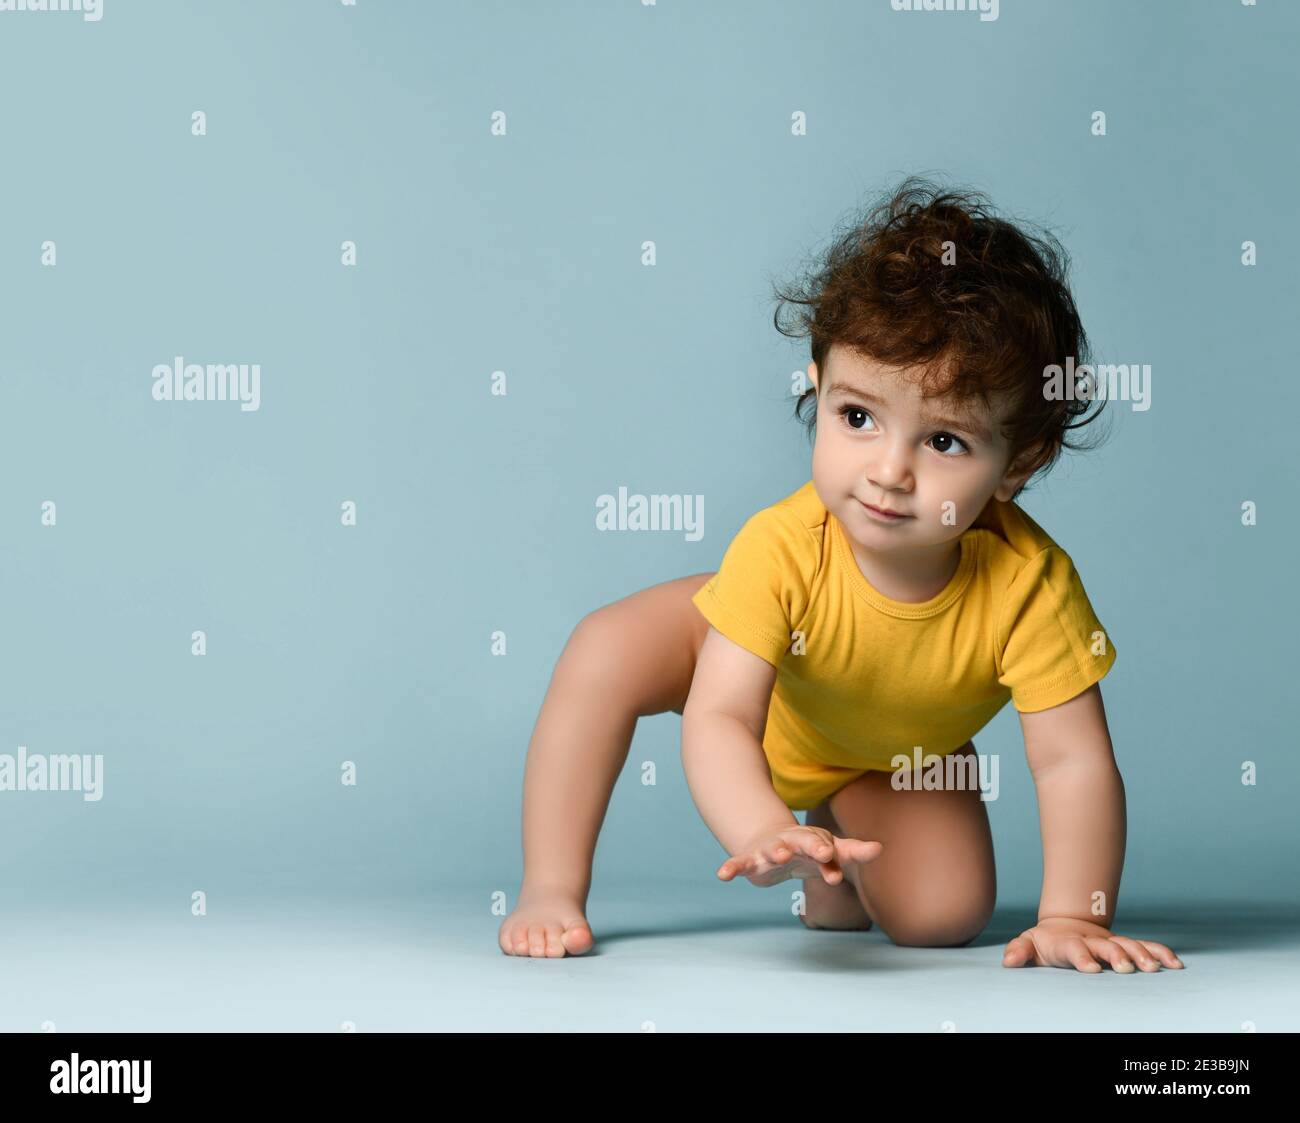 Kleine nette positive lockige Baby junge Kleinkind in gelb bequem Jumpsuit kriecht auf dem Boden und versucht aufzustehen Stockfoto